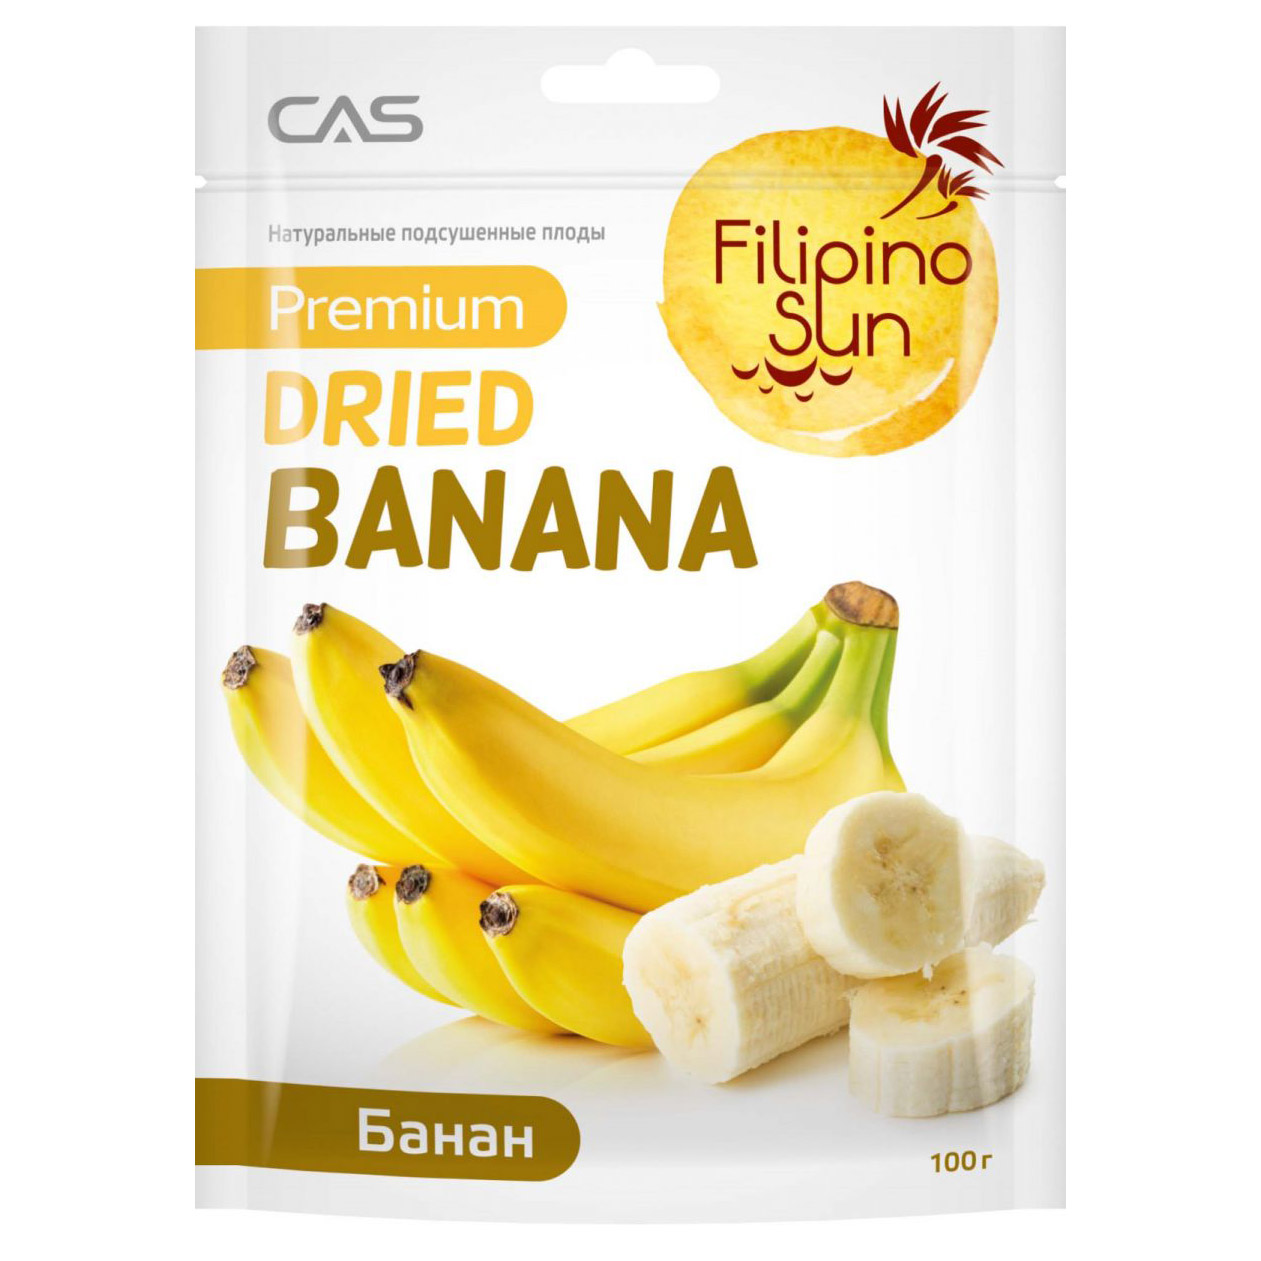 Подсушенные плоды банана Filipino Sun 100 г семечки от мартина отборные 200 гр